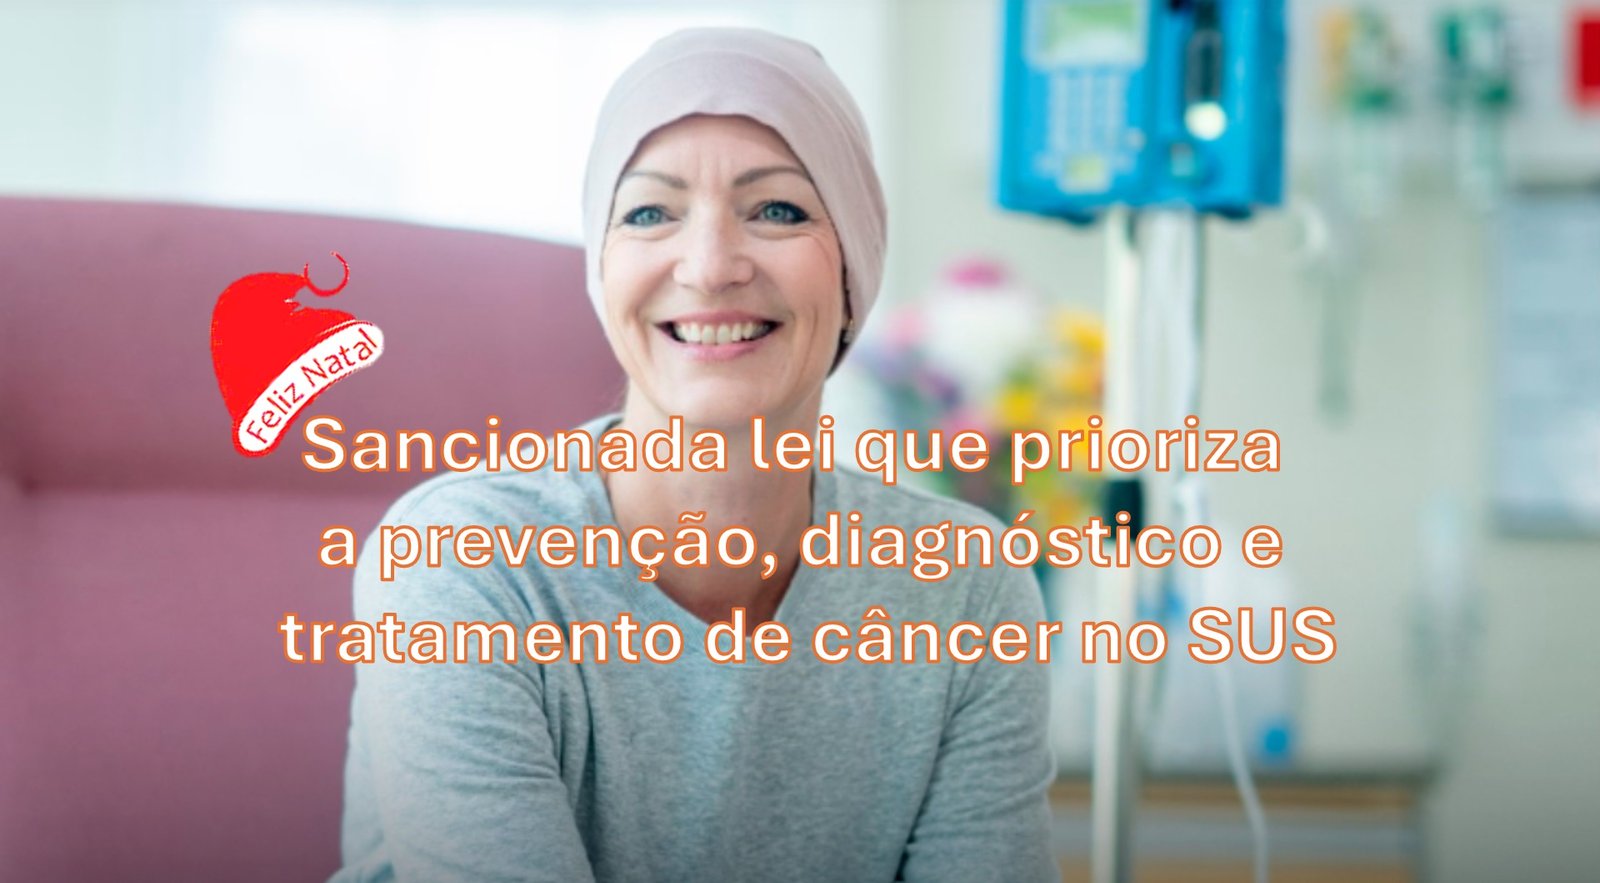 Presente de Natal - Sancionada lei que prioriza a prevenção, diagnóstico e tratamento de câncer no SUS